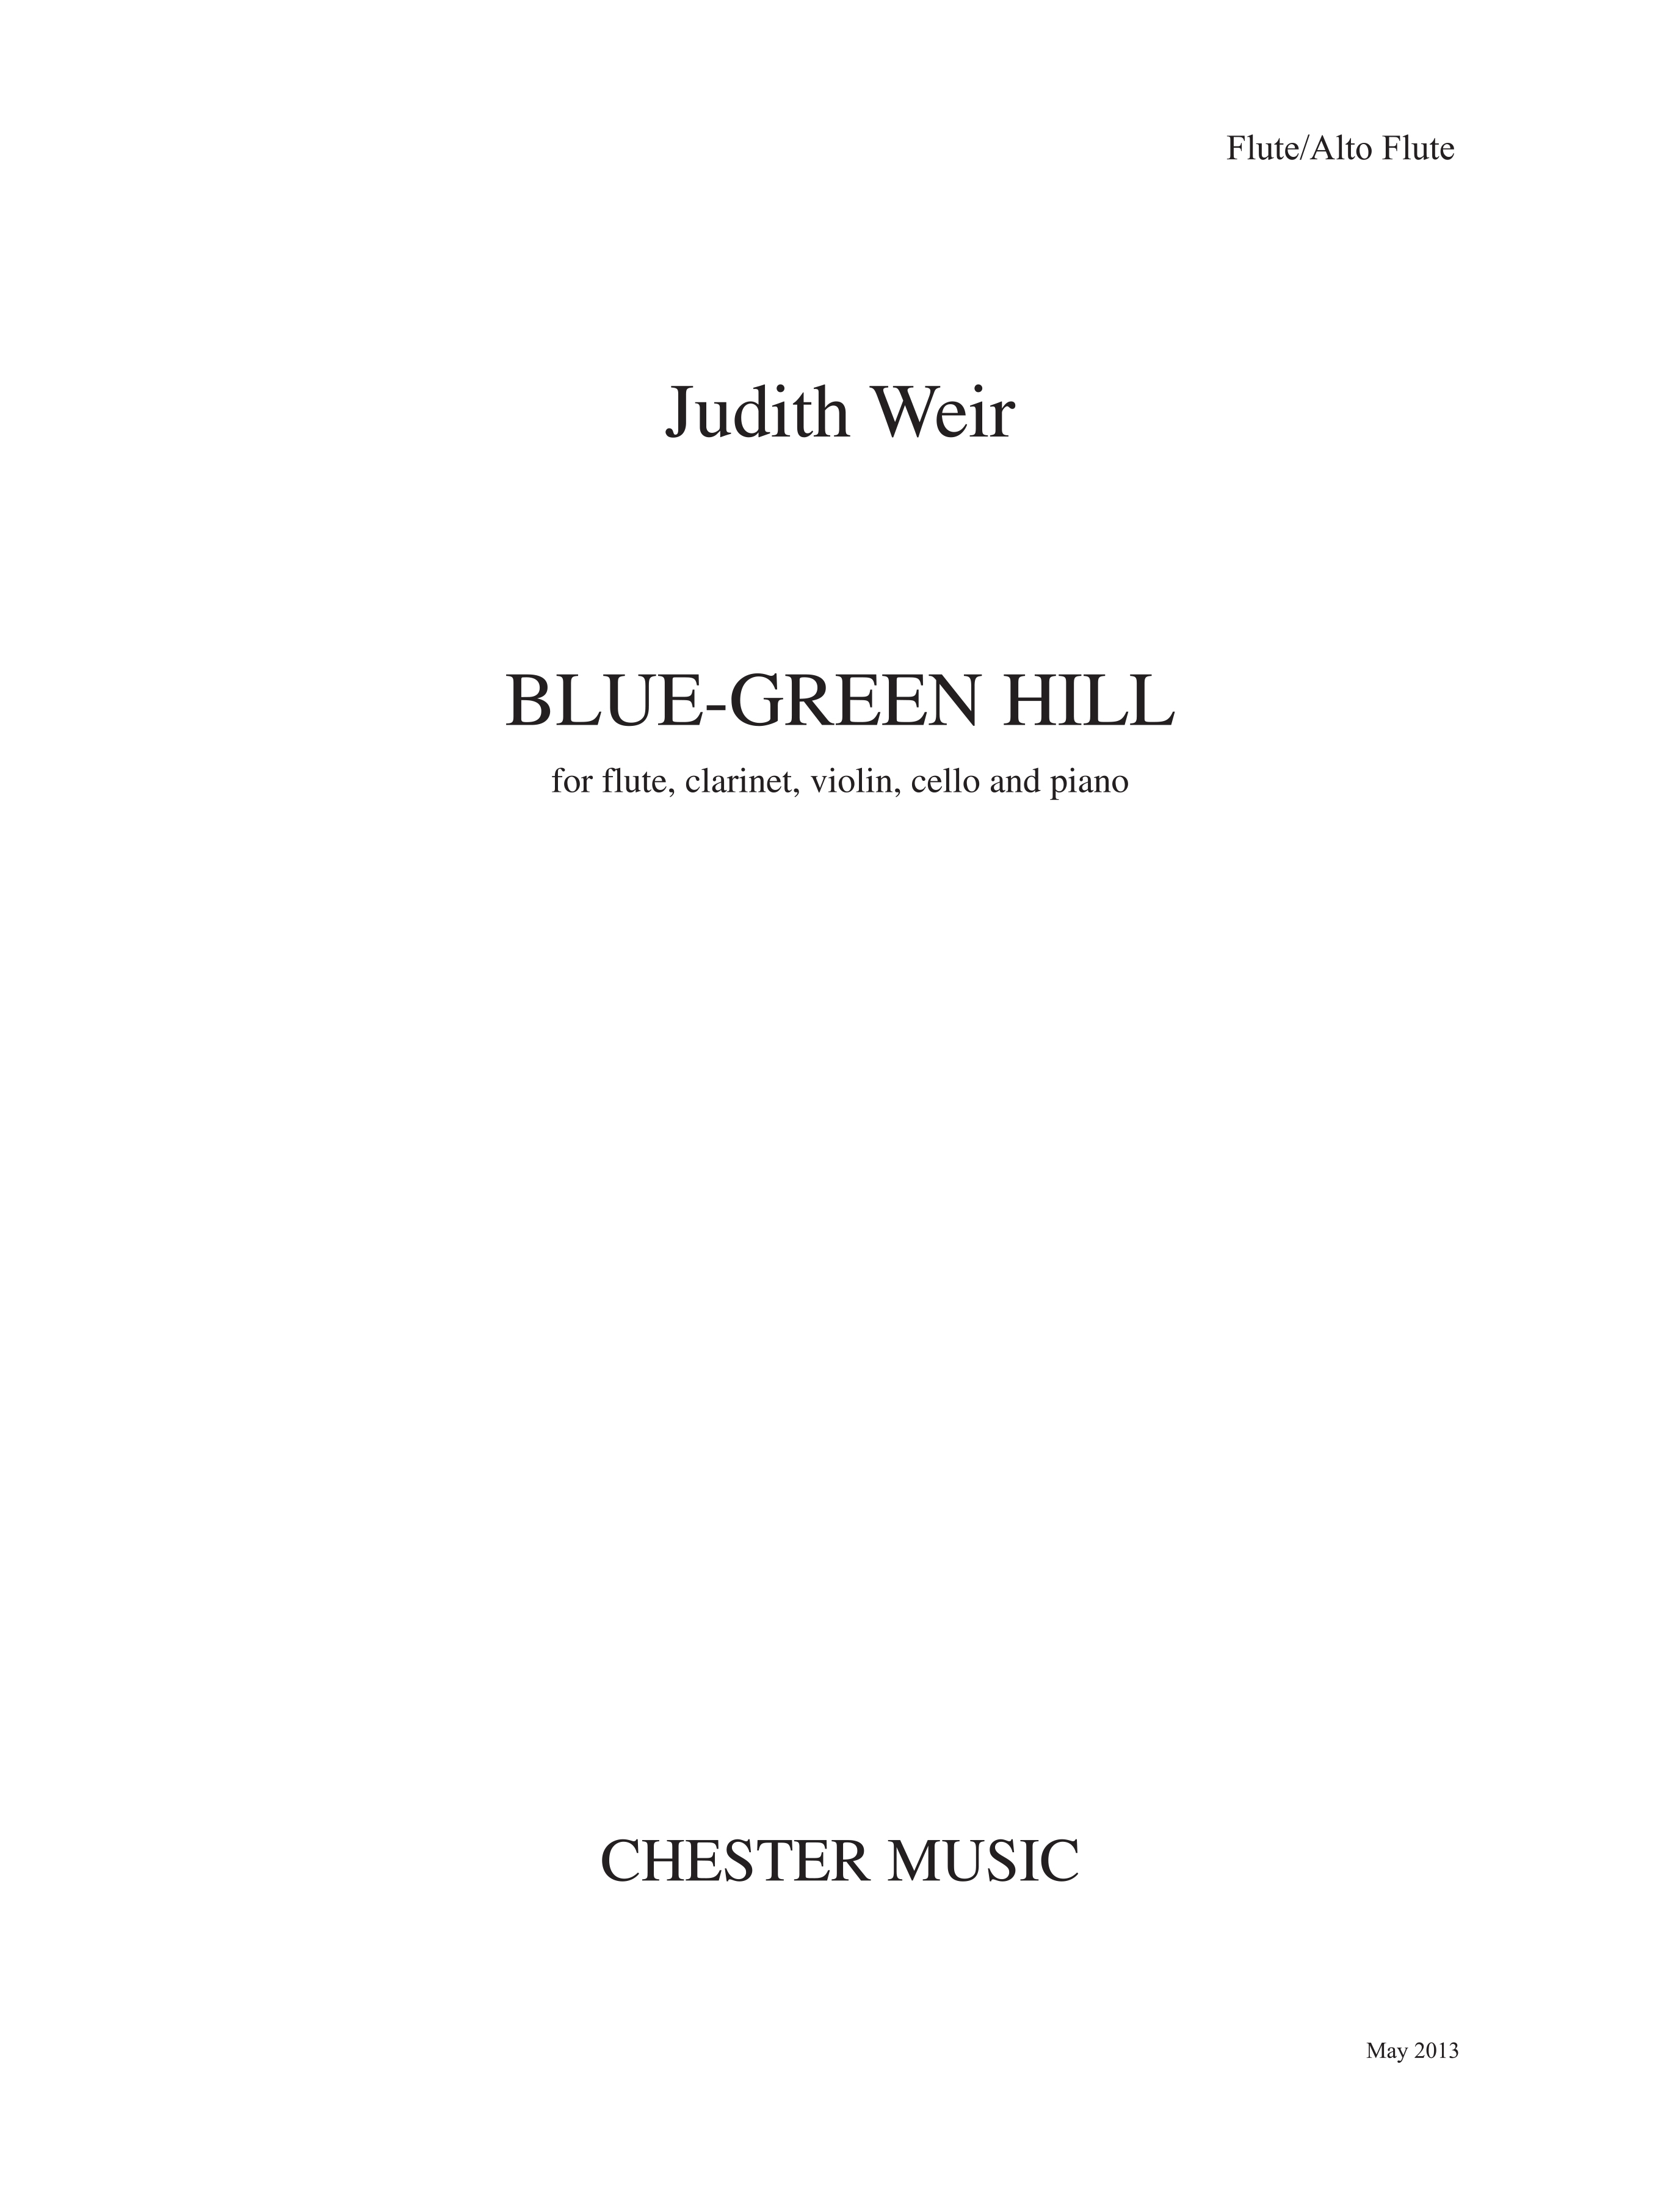 Judith Weir: Blue-Green Hill (Parts)